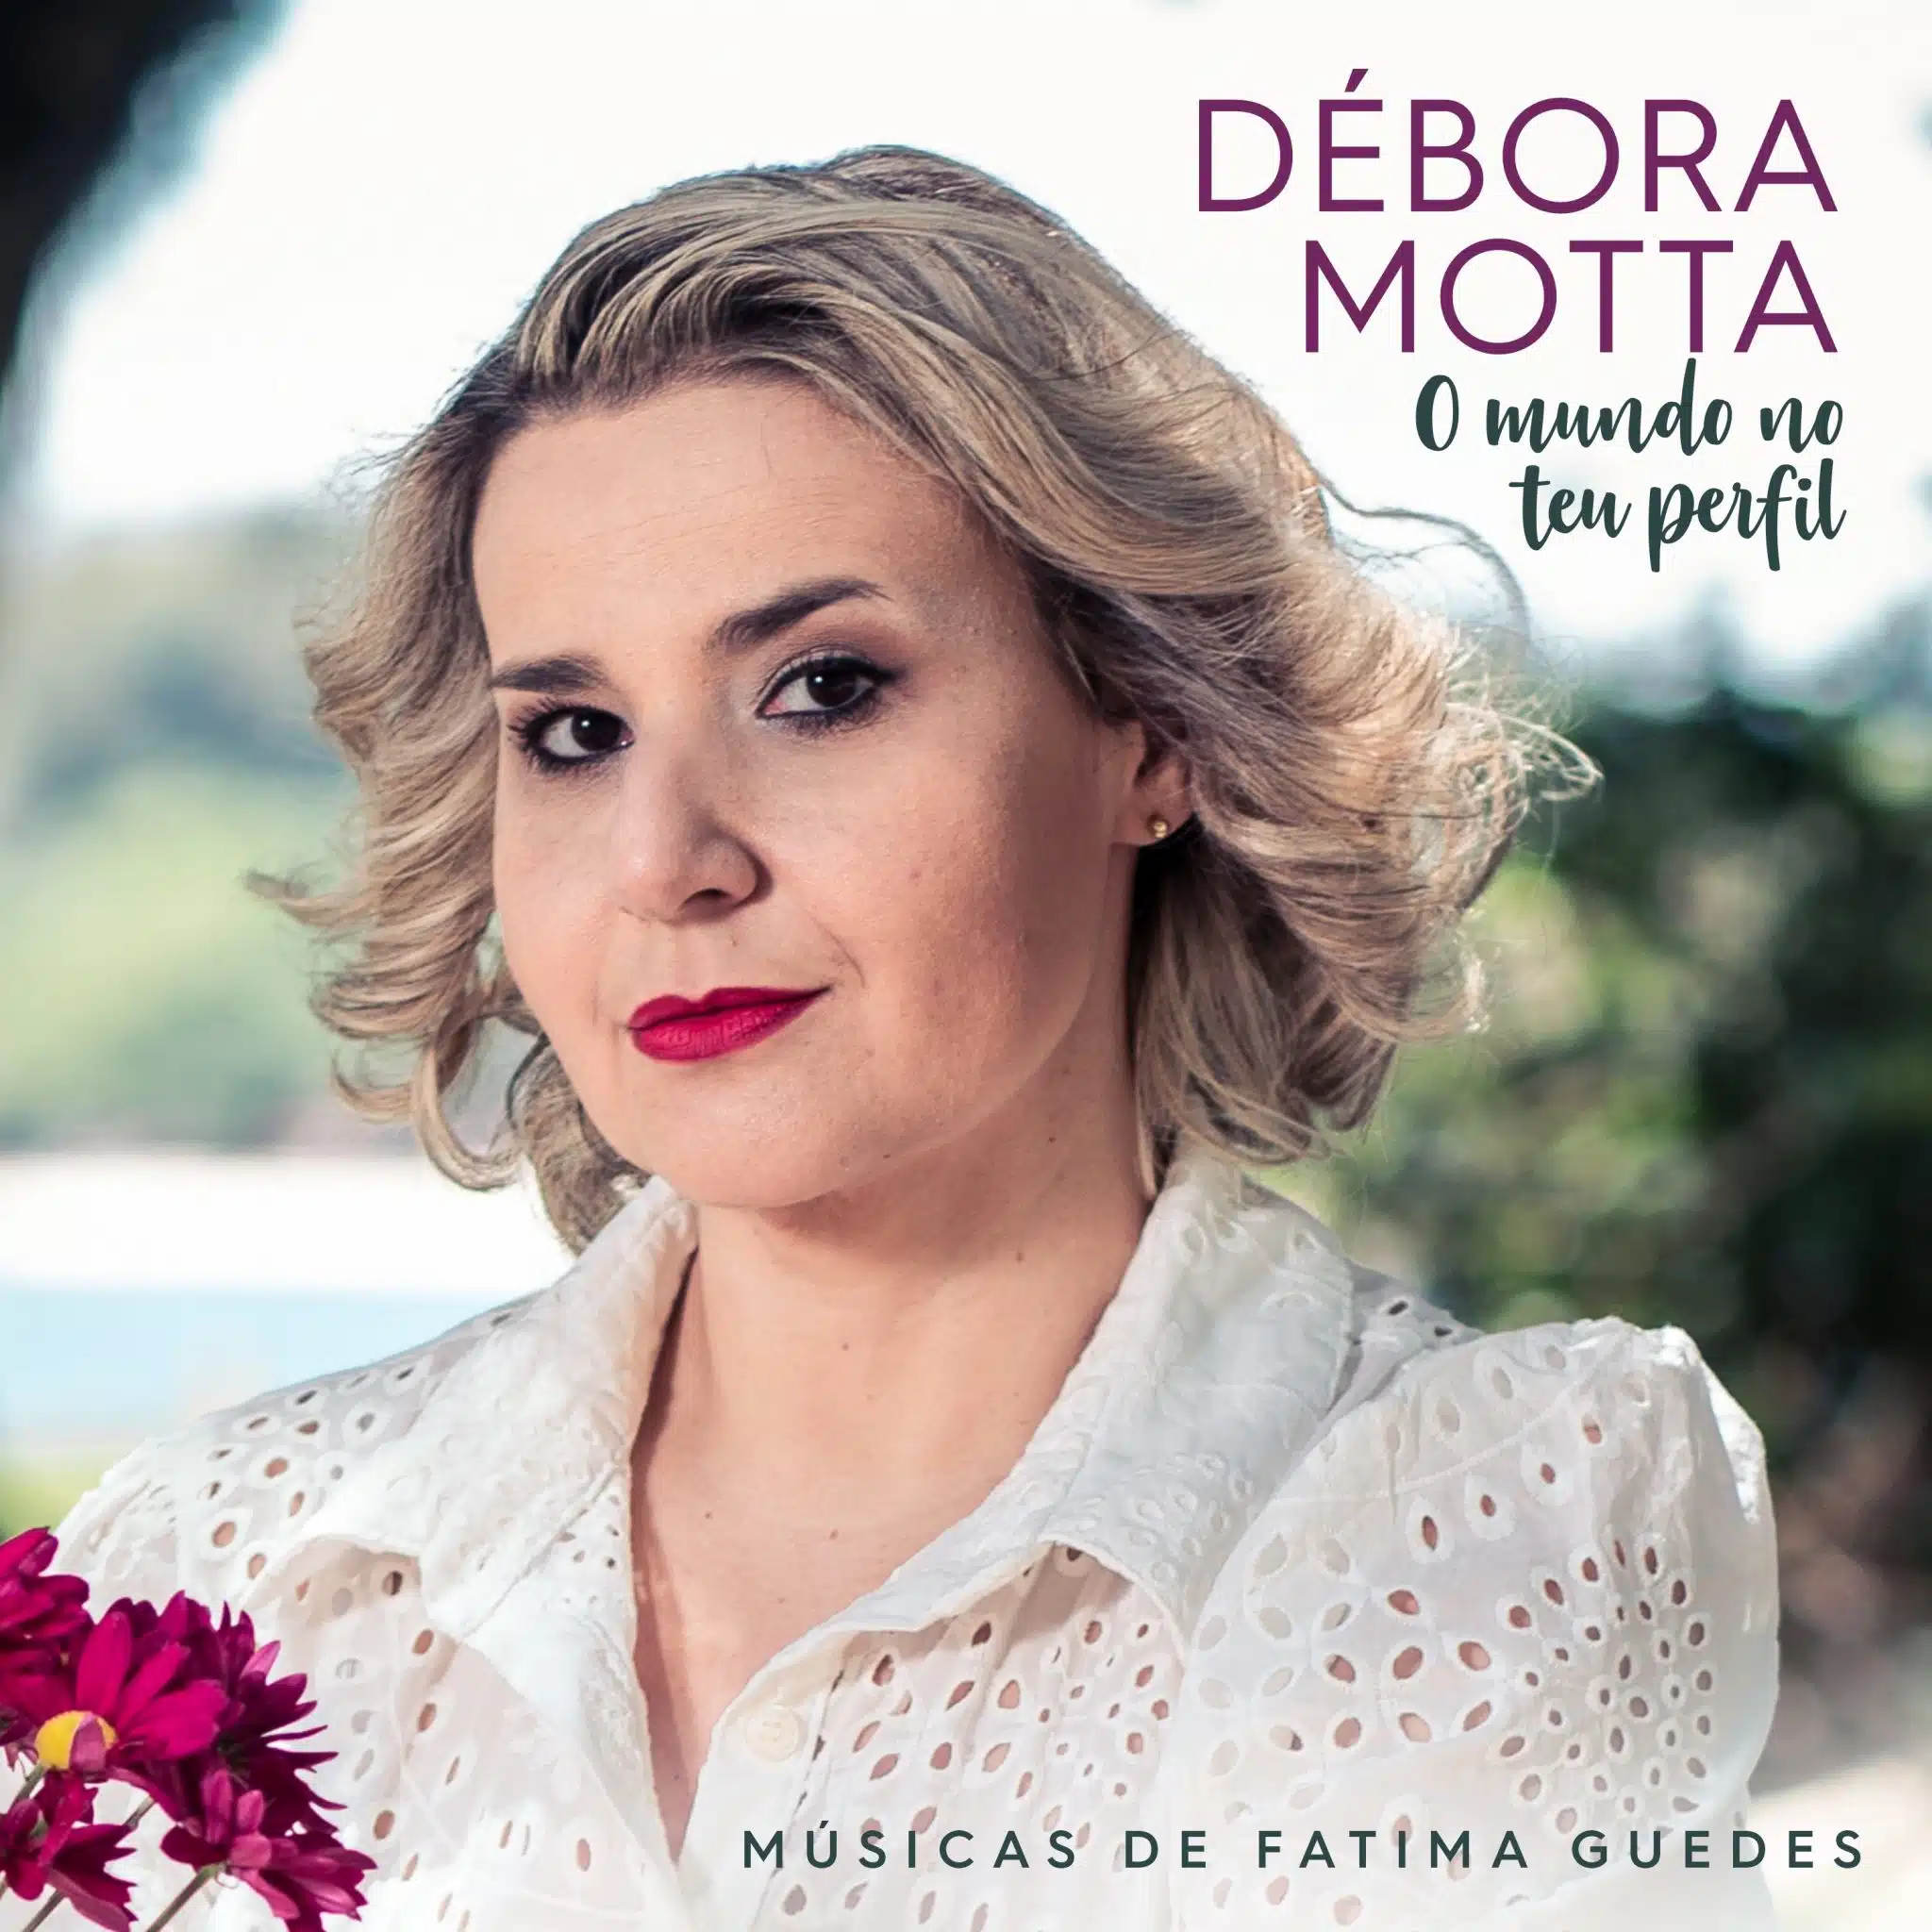 revistaprosaversoearte.com - Débora Motta mergulha no universo de Fatima Guedes no EP 'O mundo no teu perfil